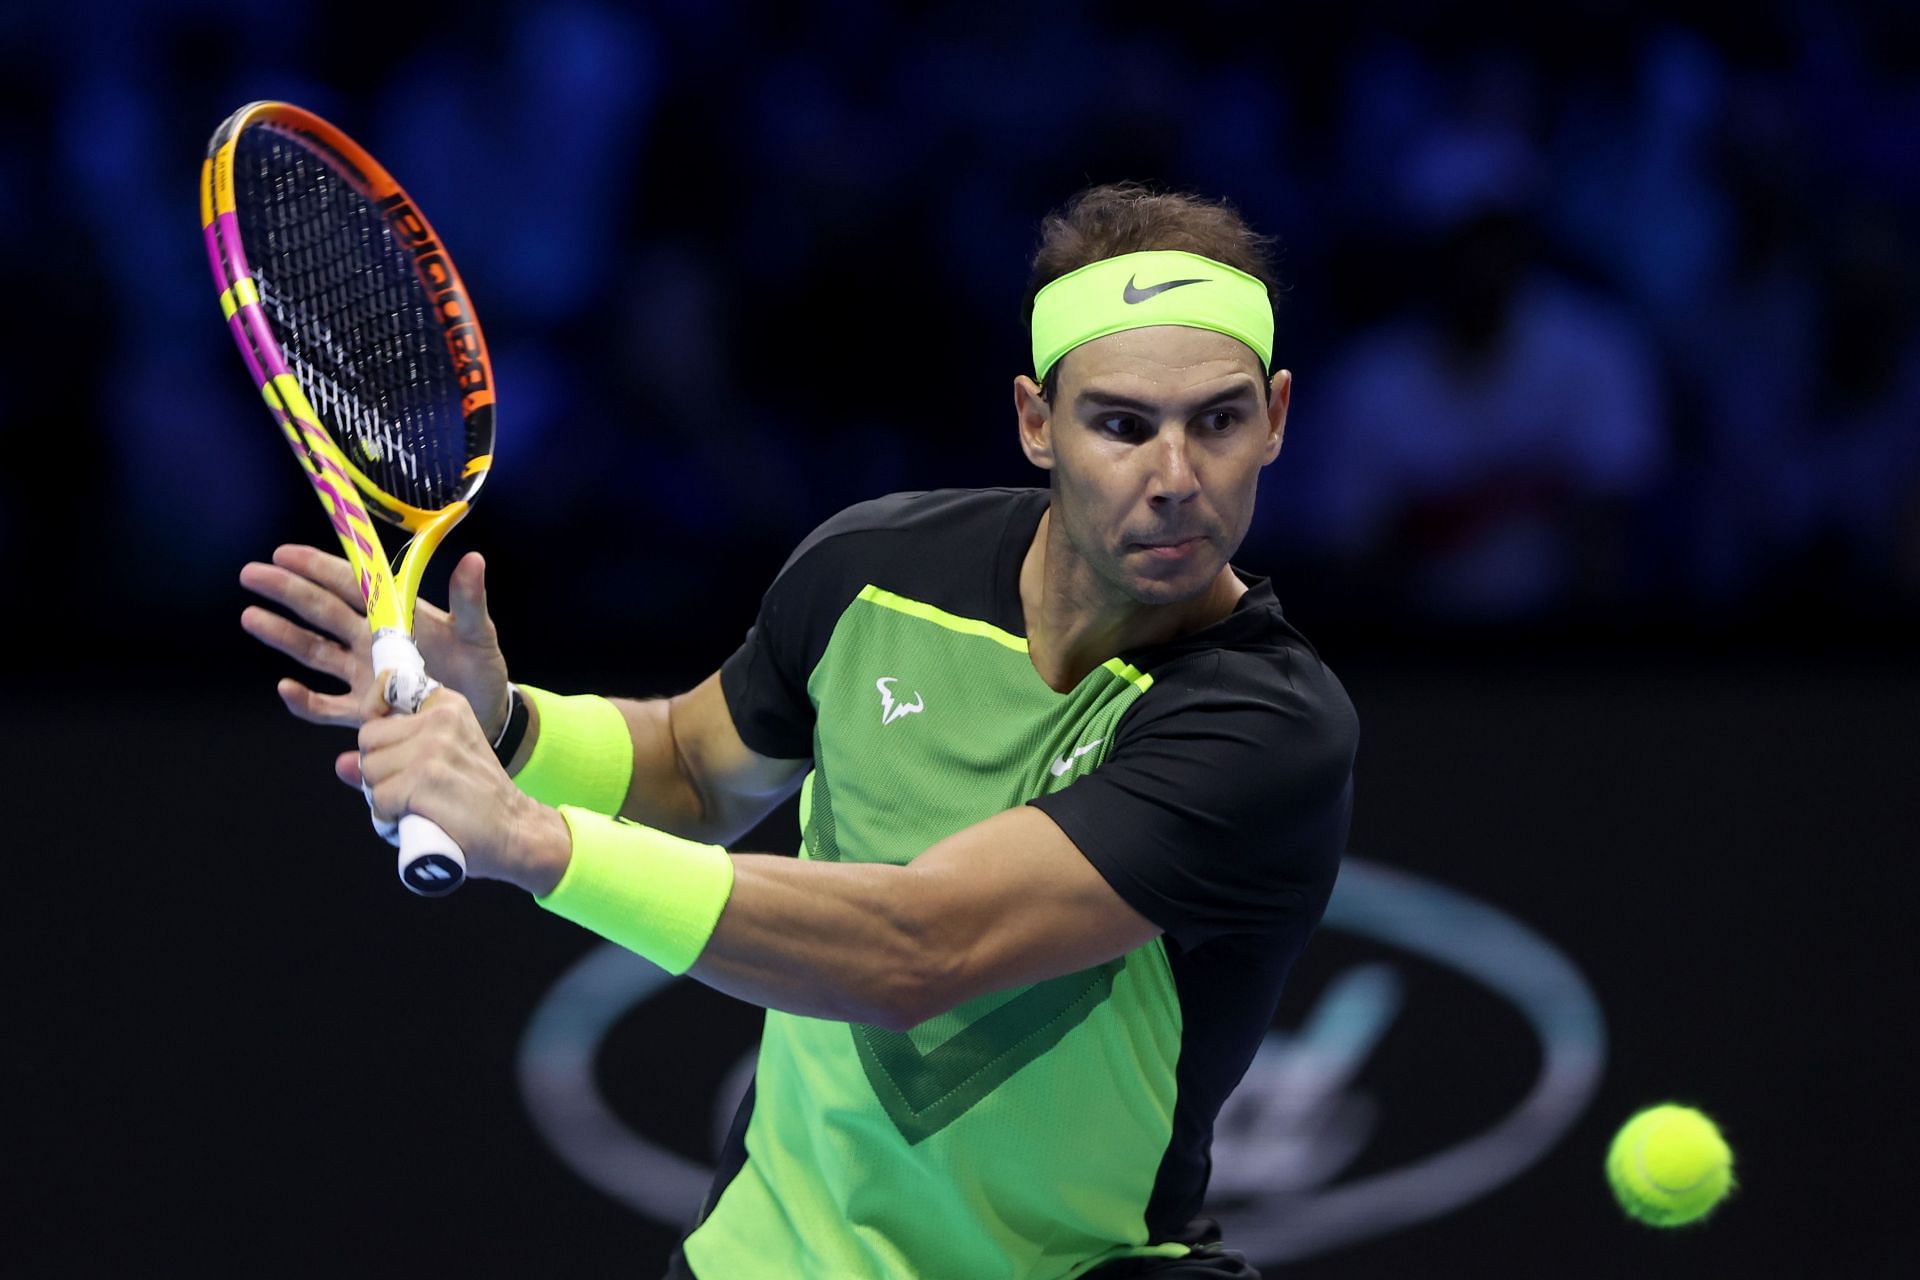 Rafael Nadal in action at Nitto ATP Finals 2022